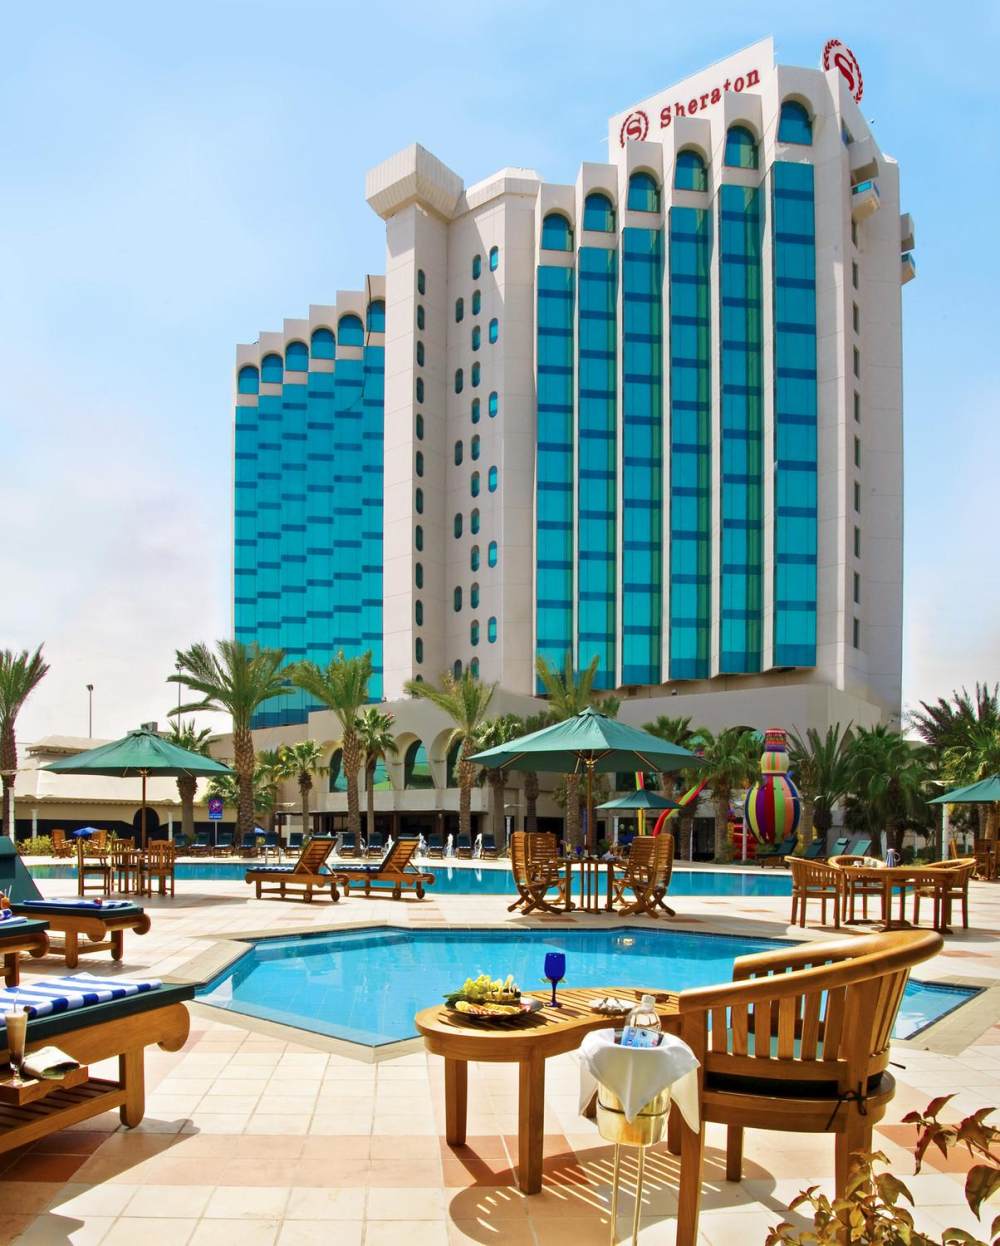 沙特阿拉伯－达曼喜来登大酒店 Sheraton Dammam Hotel & Towers_91997_large.jpg